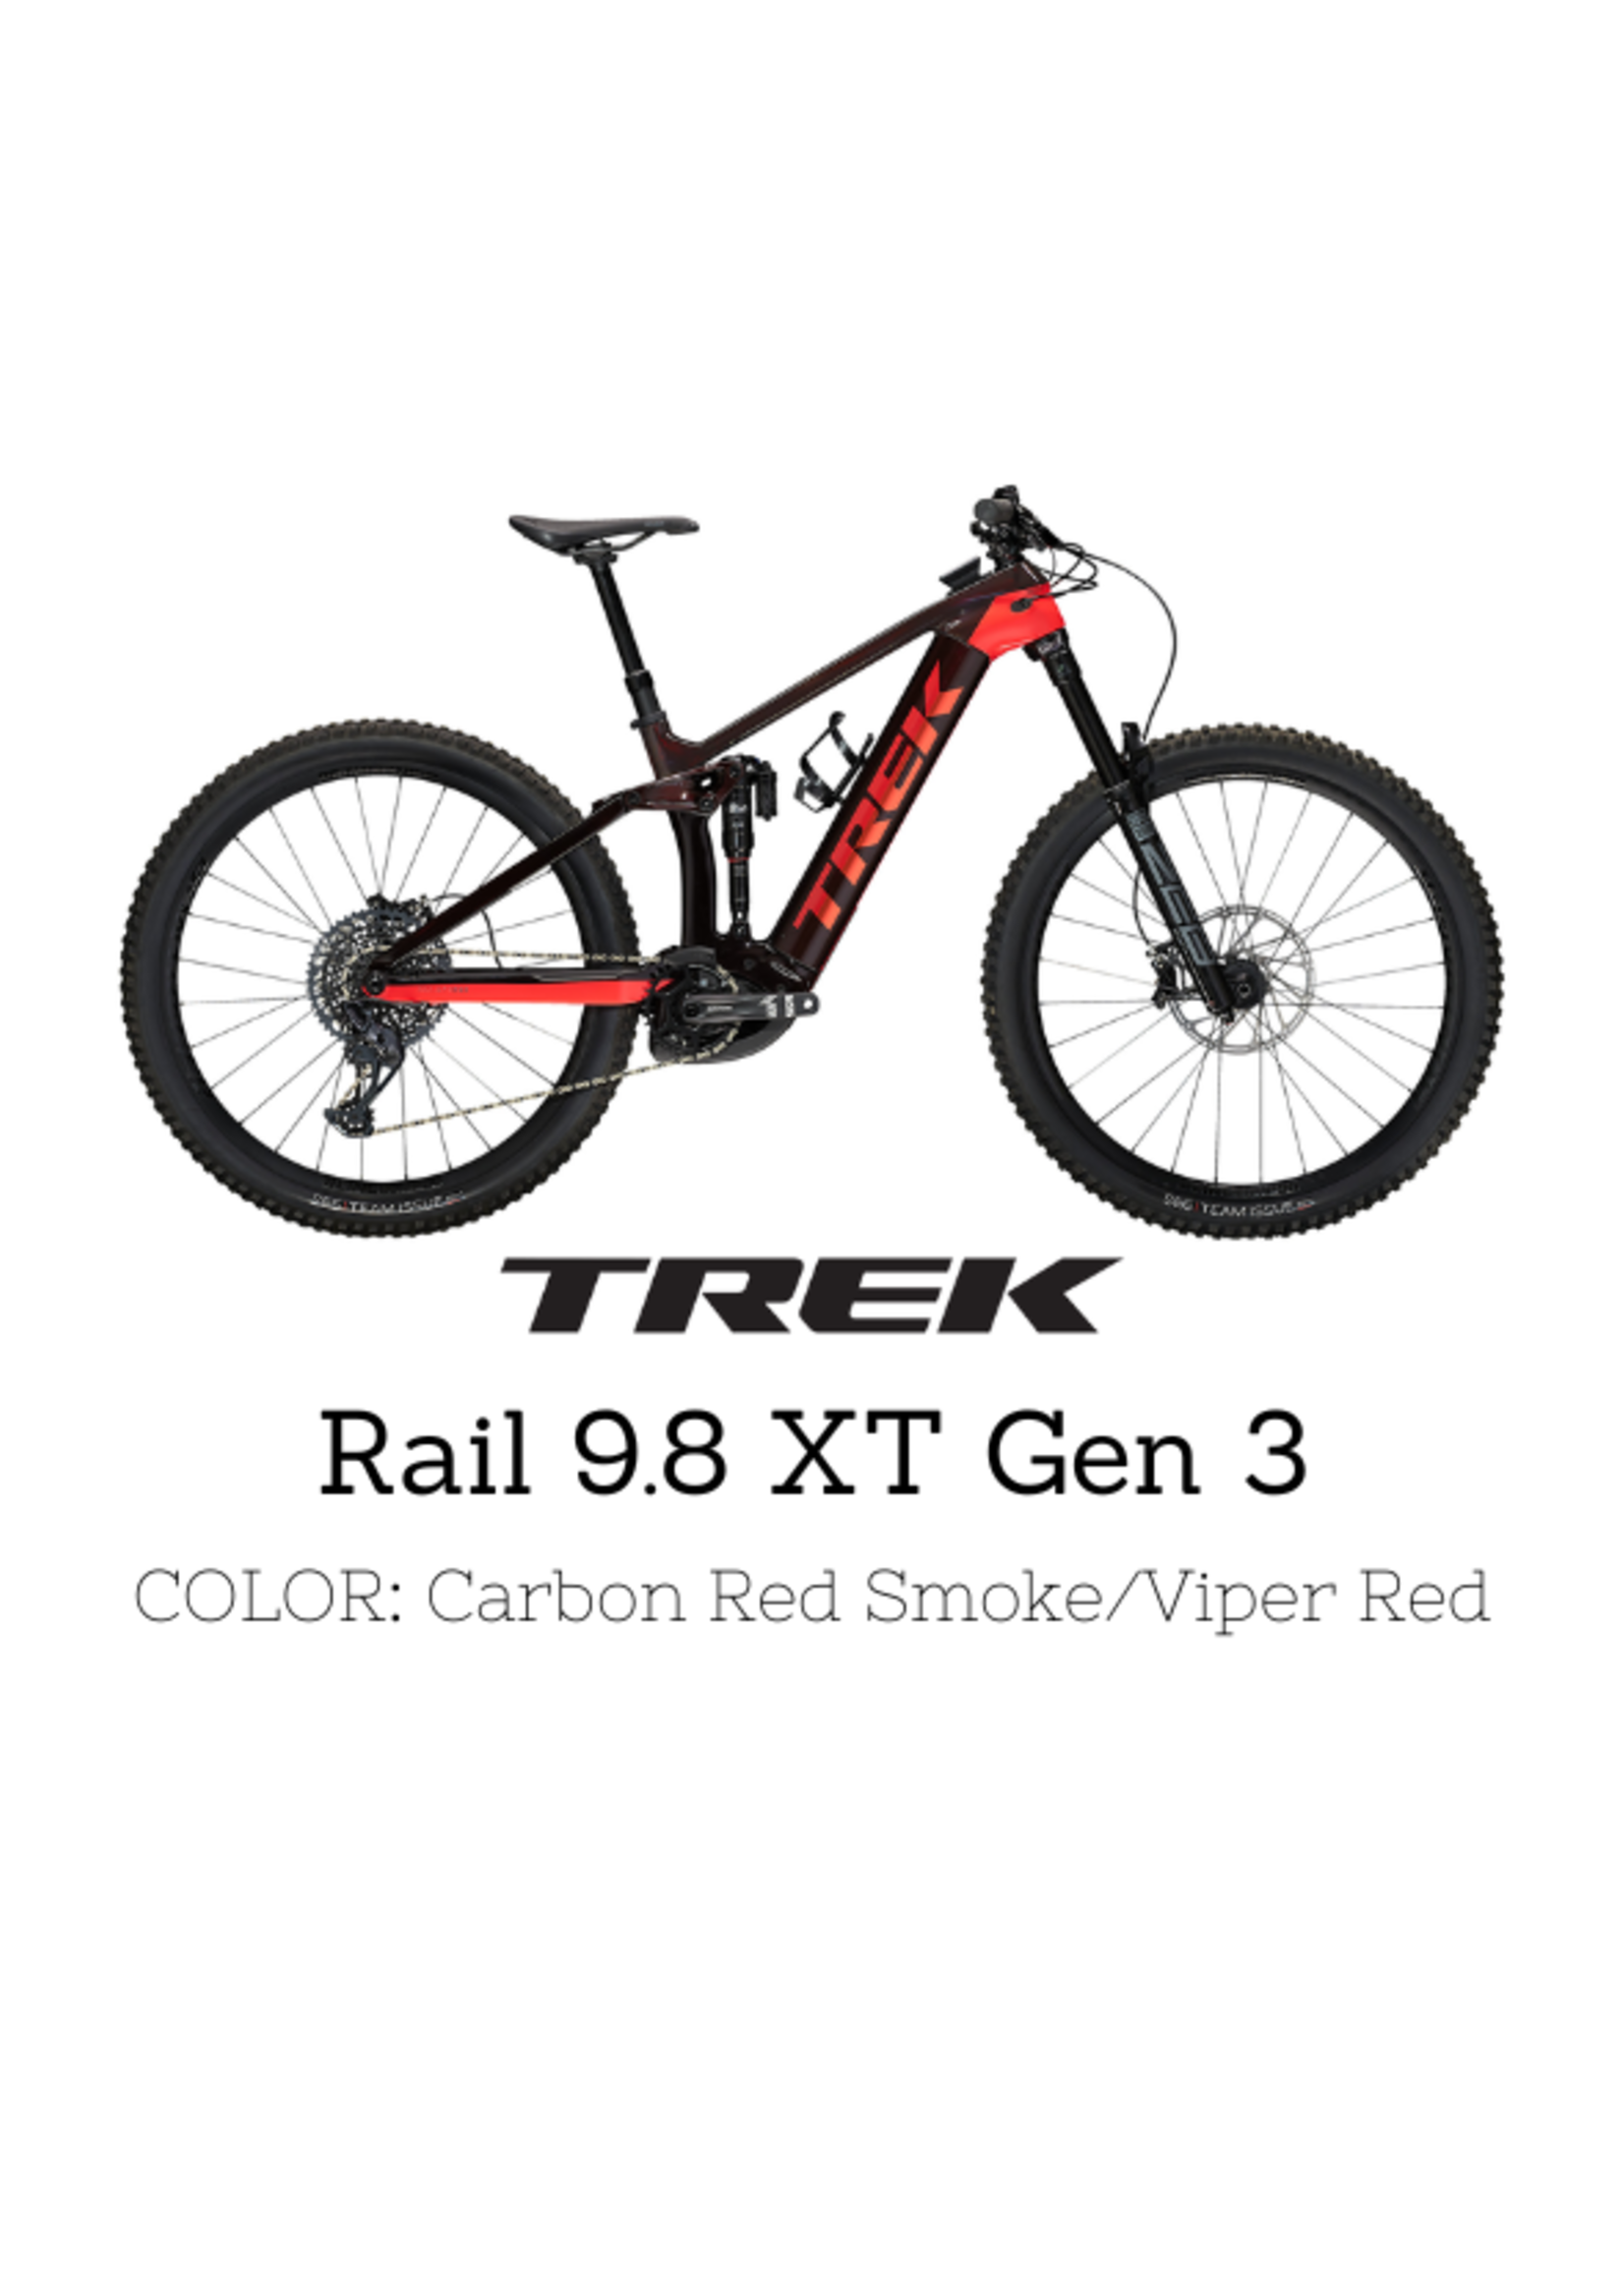 TREK Trek Rail 9.8 XT Gen 3